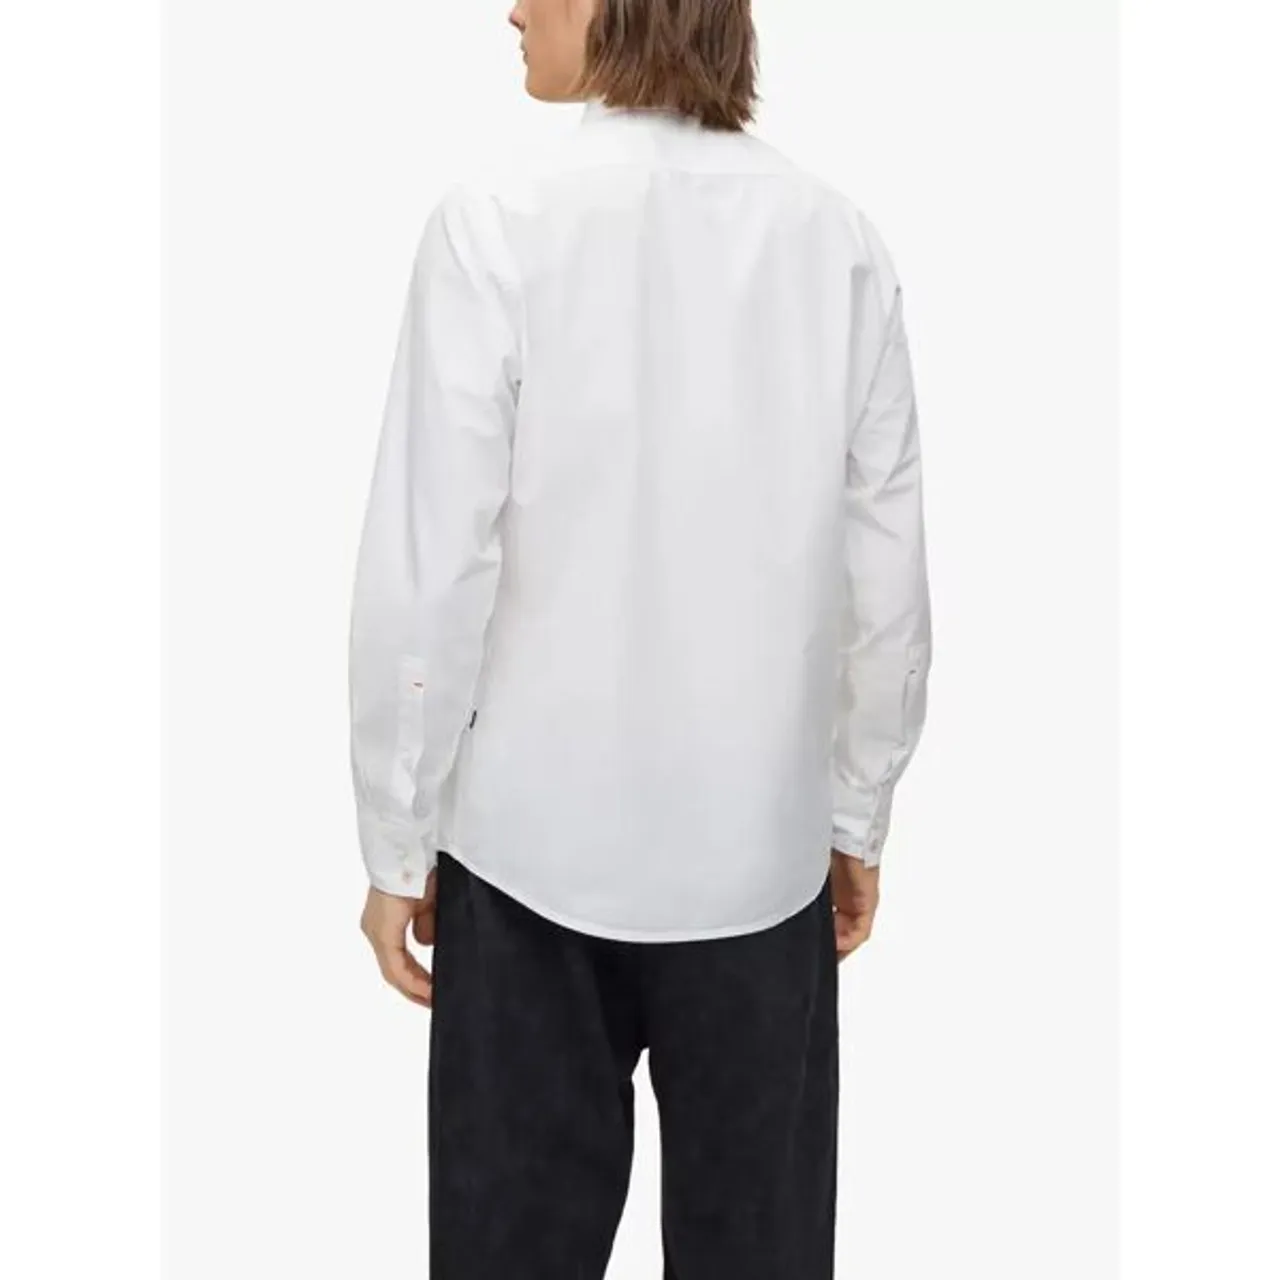 Hugo Boss BOSS Relegant Regular Fit Garment Dyed Shirt - White - Male